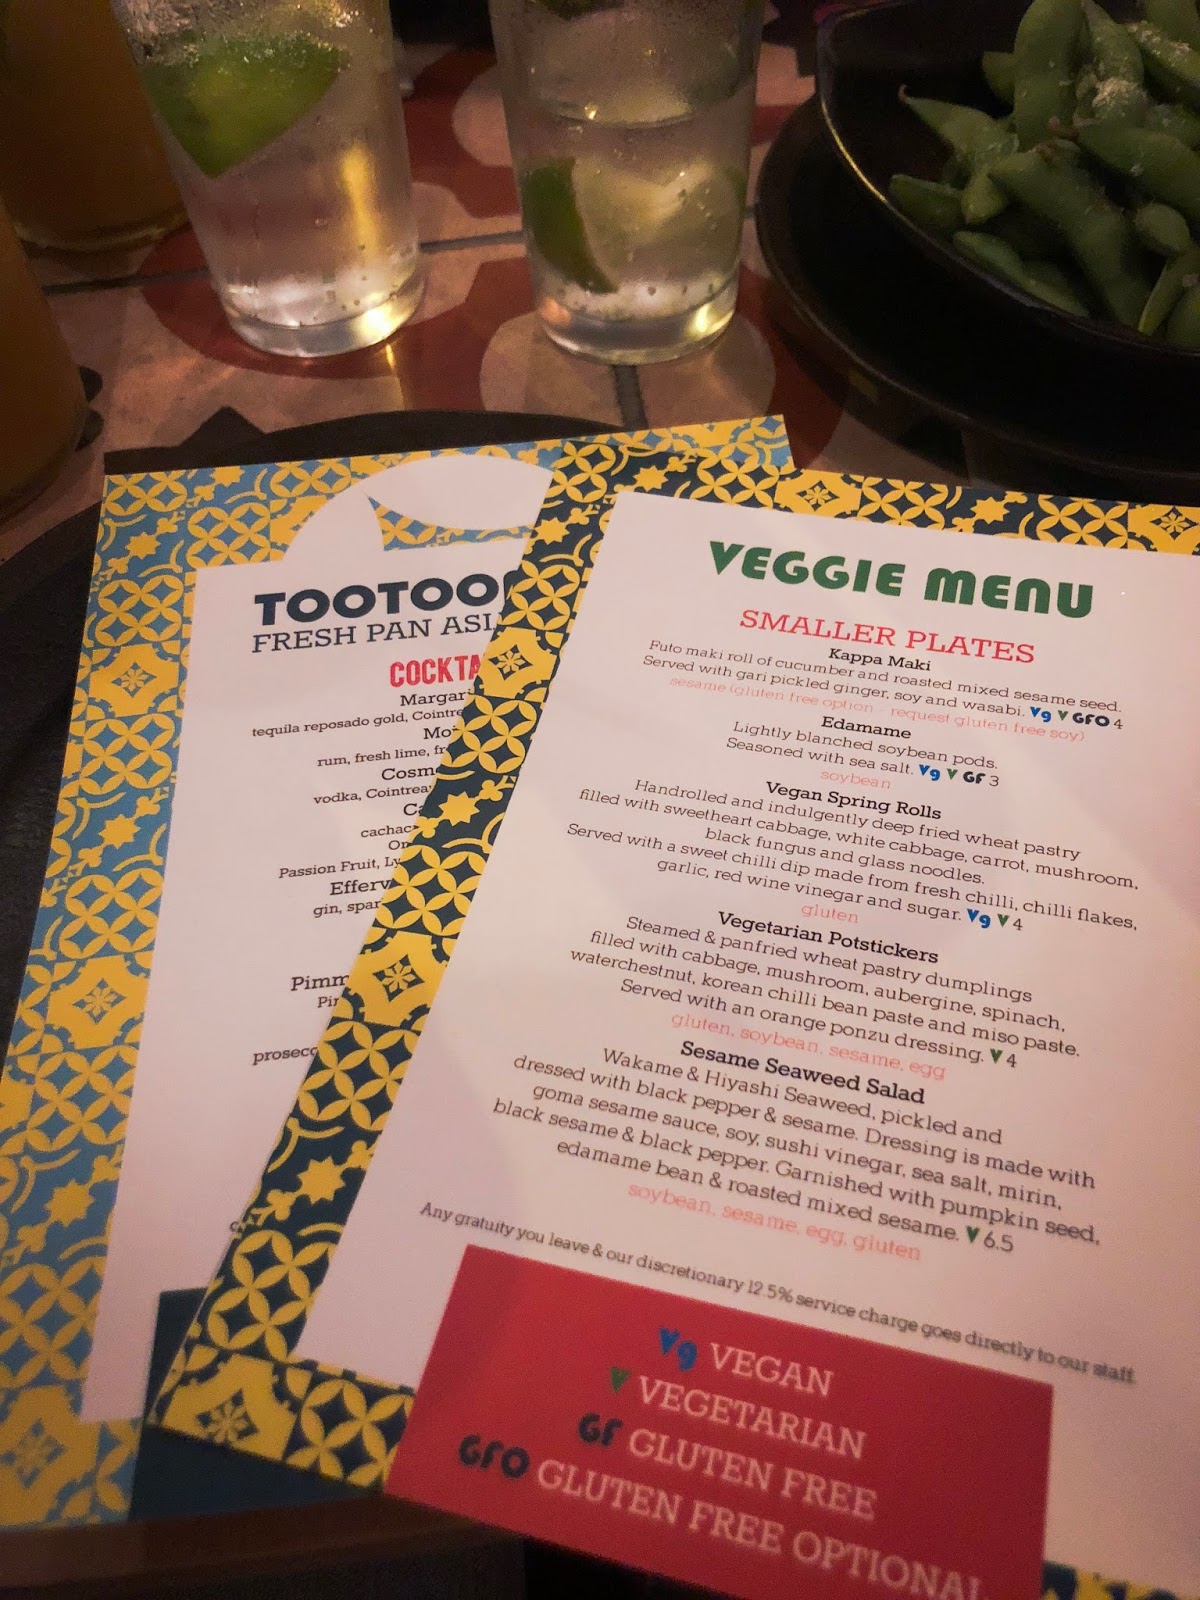 TooTooMoo vegan menu